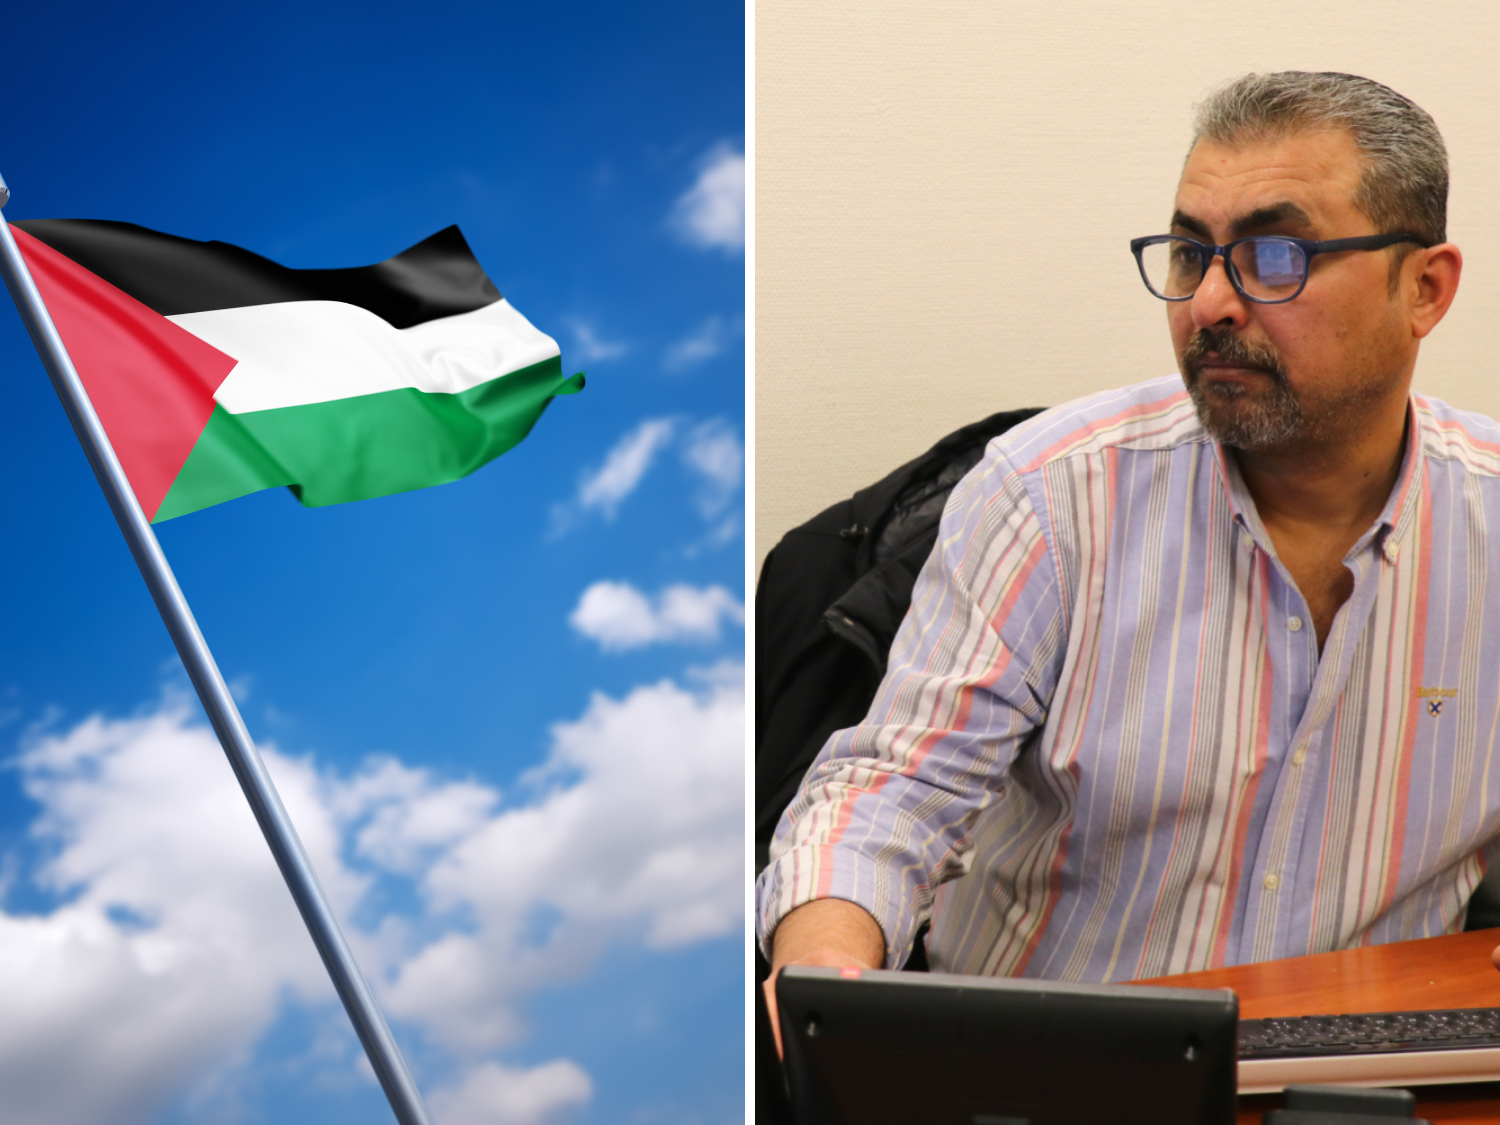 Till vänster: Palestinas flagga. Till höger: Palestinas ambassadör.